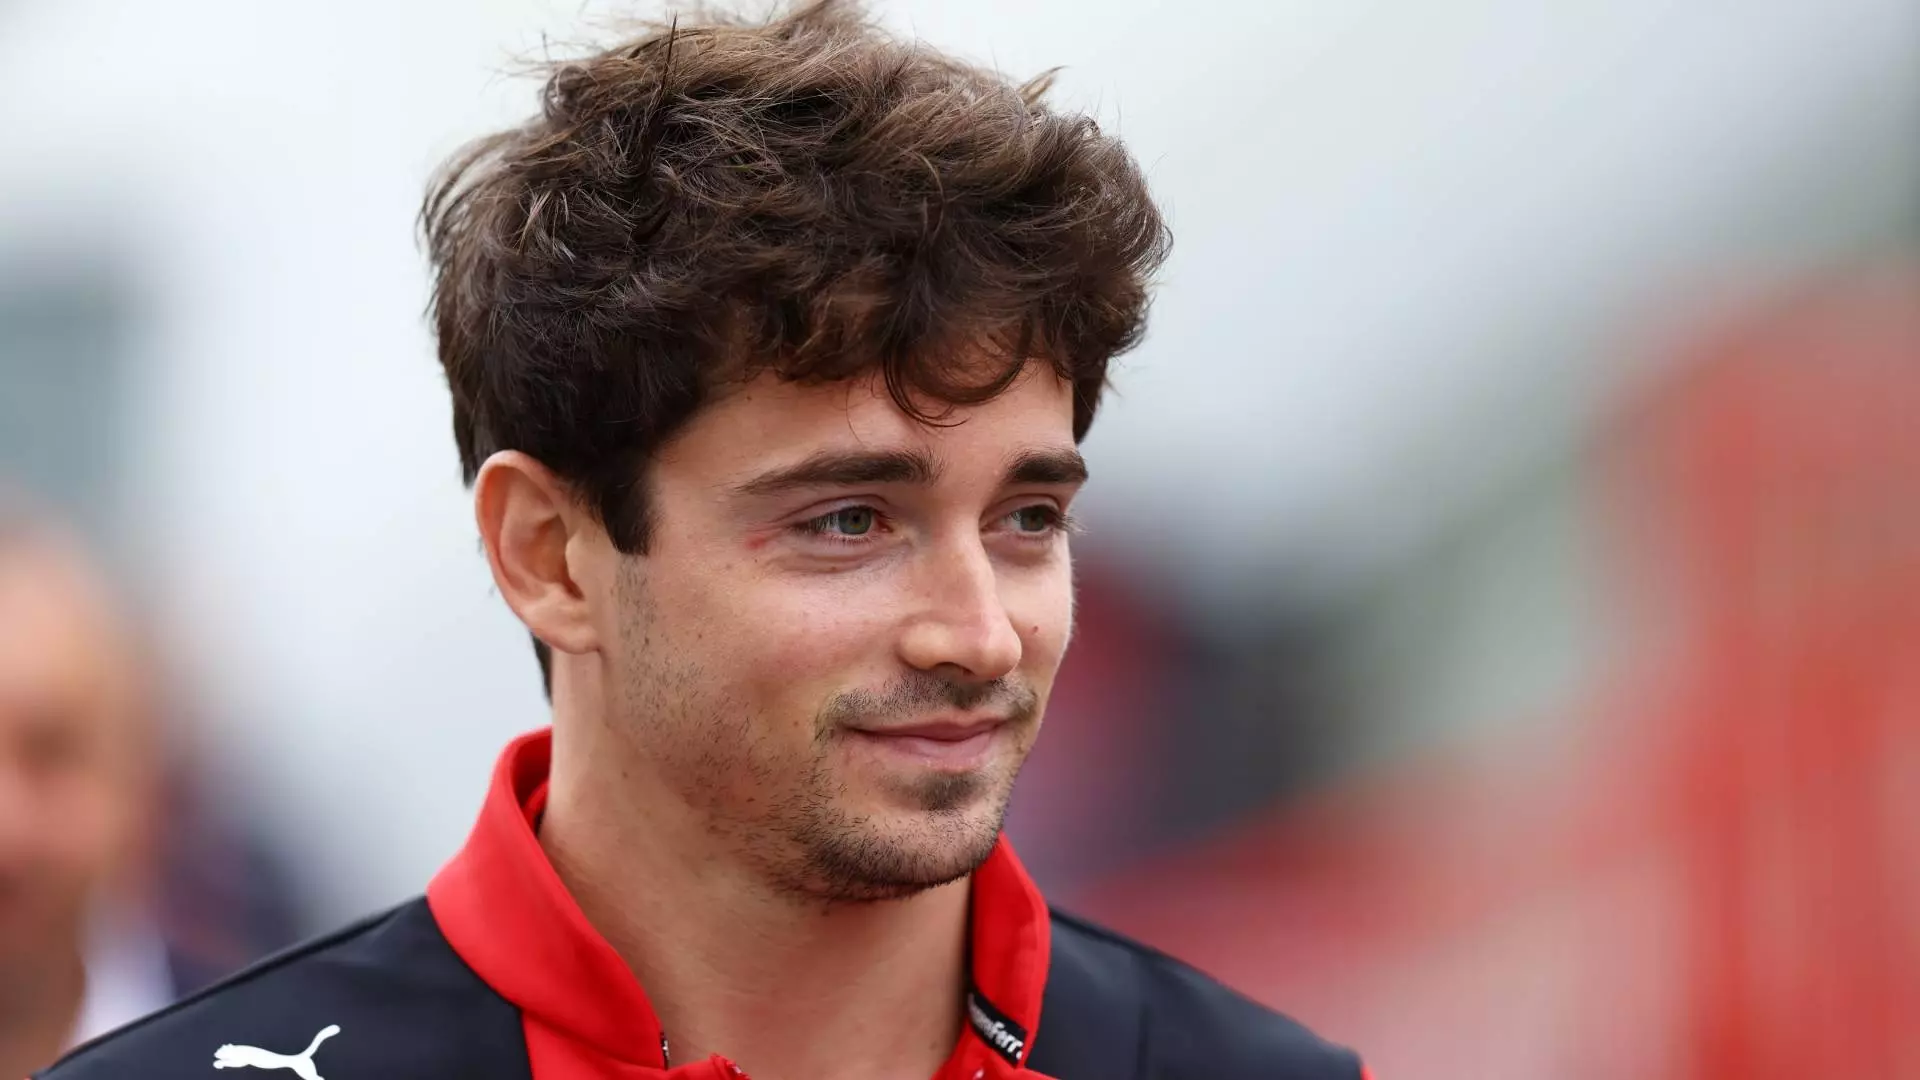 Charles Leclerc uomo Ferrari: va a Le Mans per tifarla